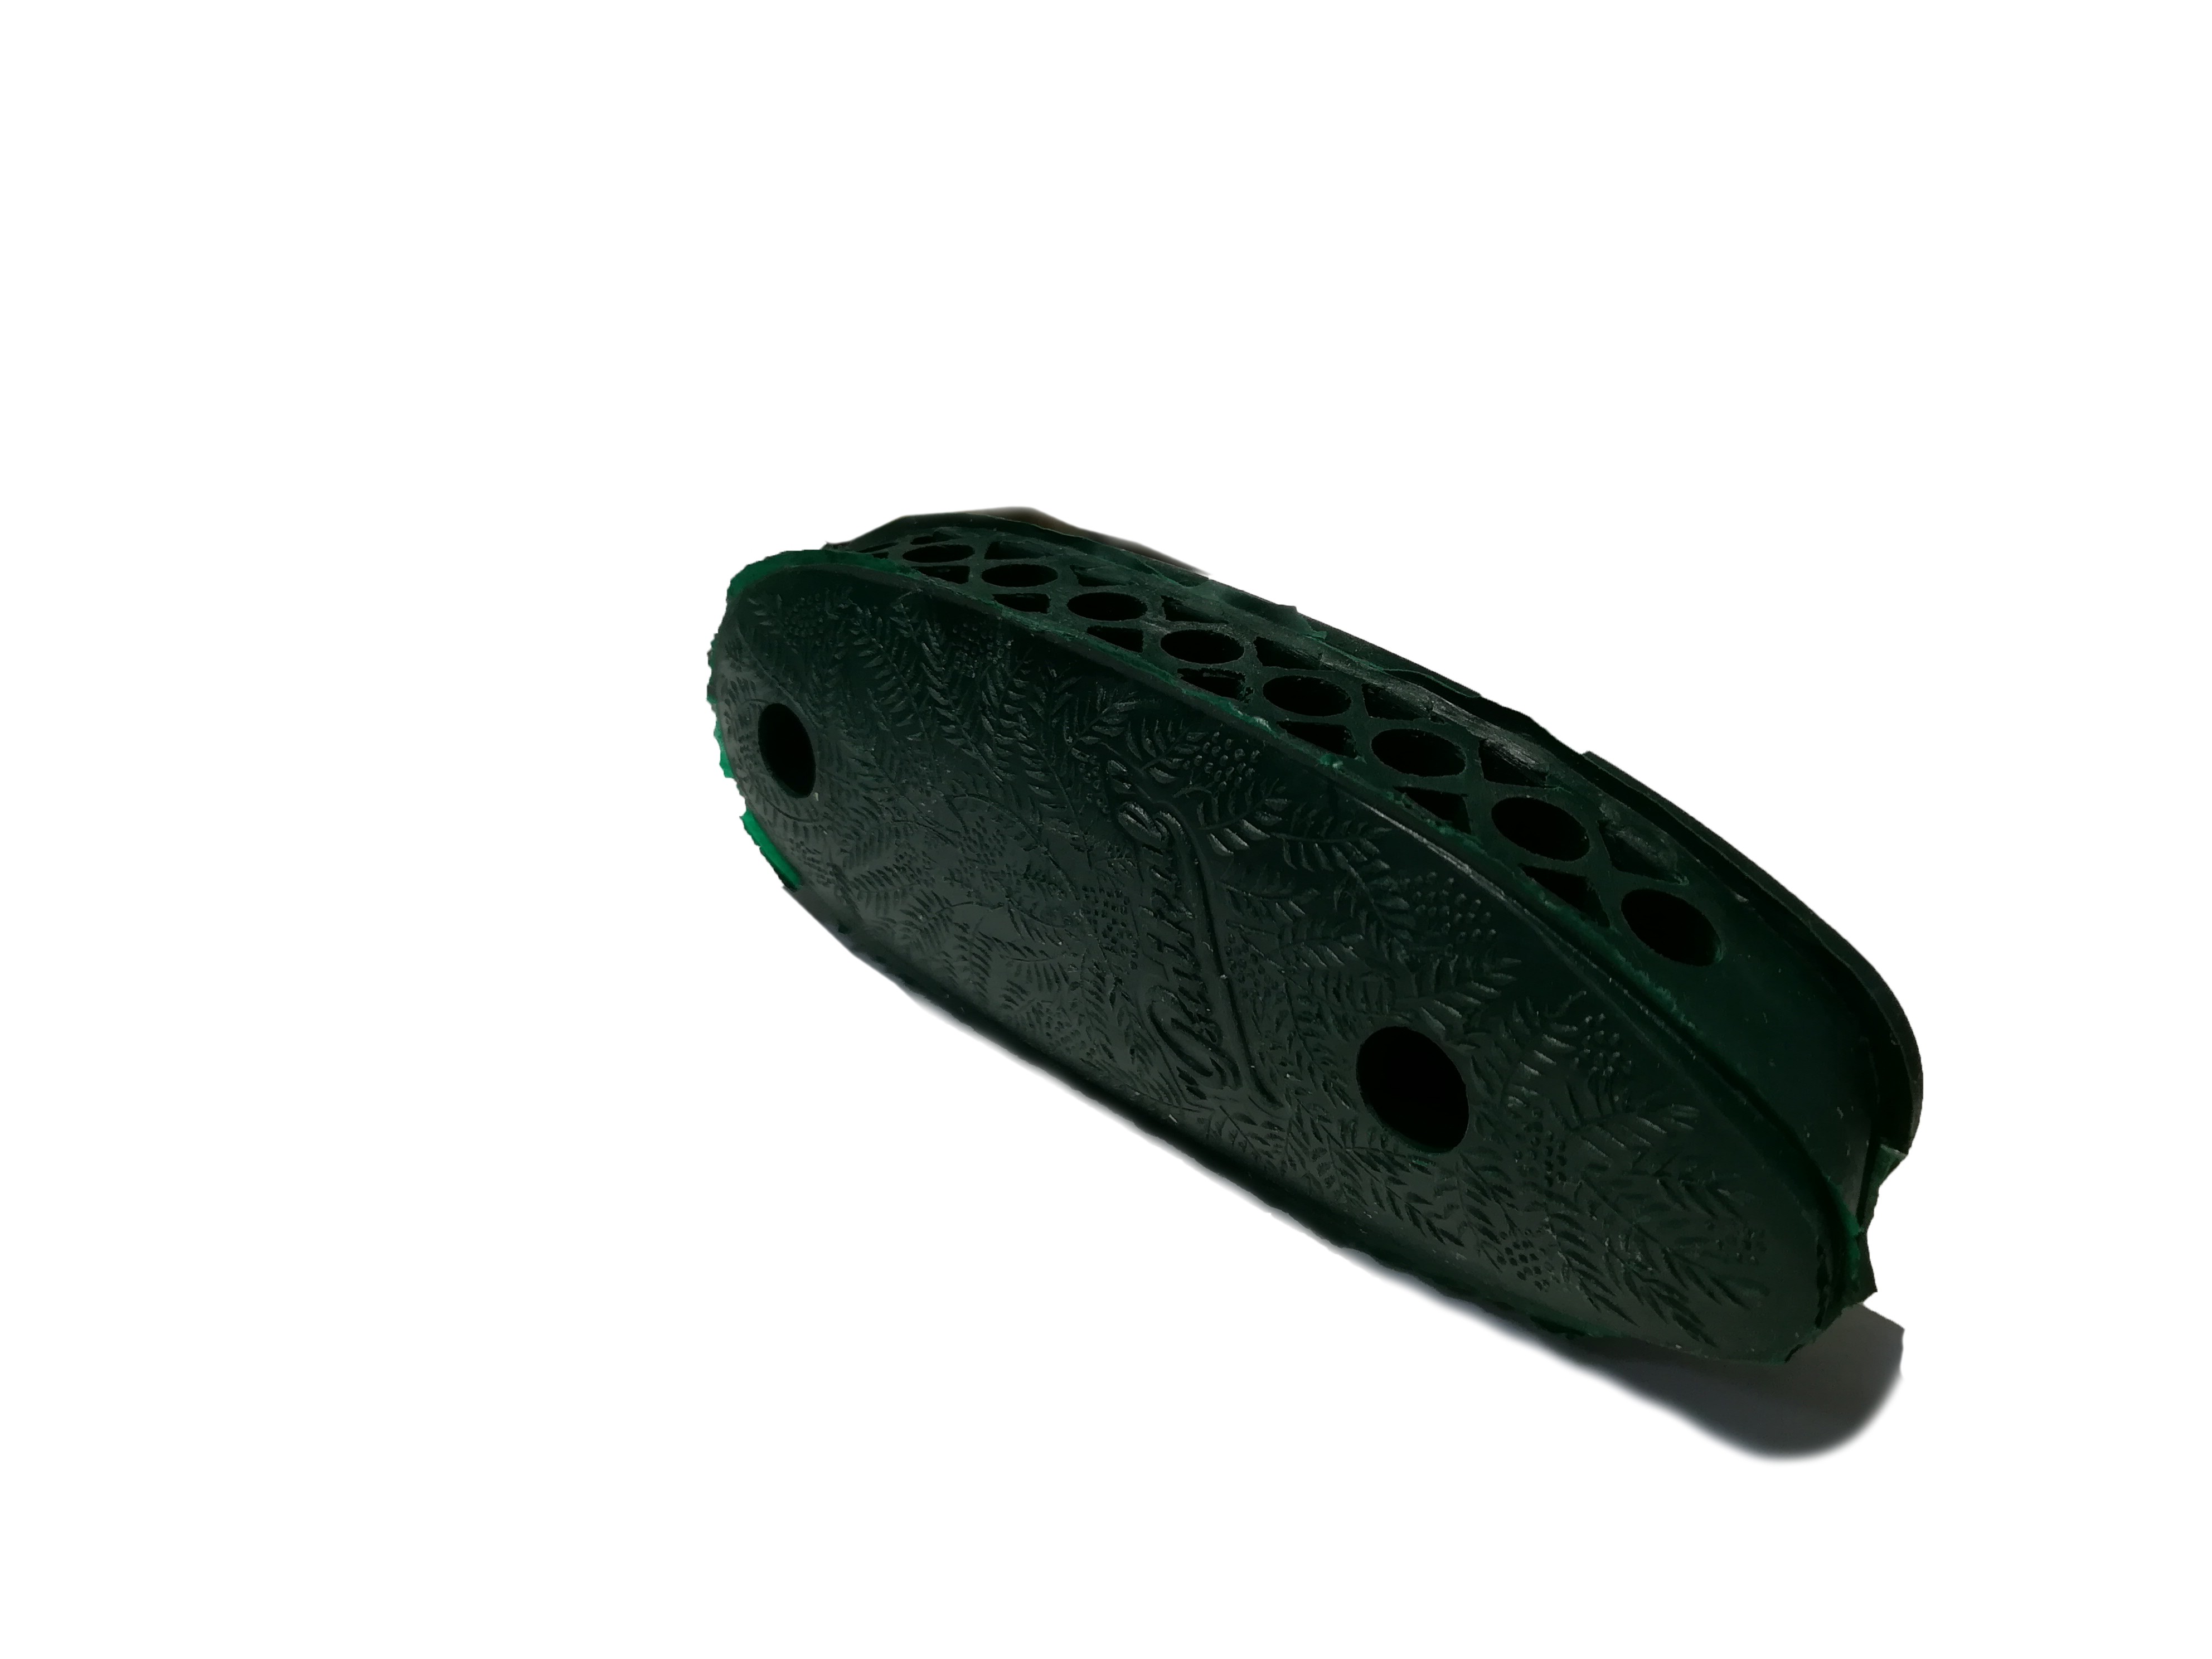 Затыльник-амортизатор Baikal МР 27 резиновый подложка пластик 28мм зеленый